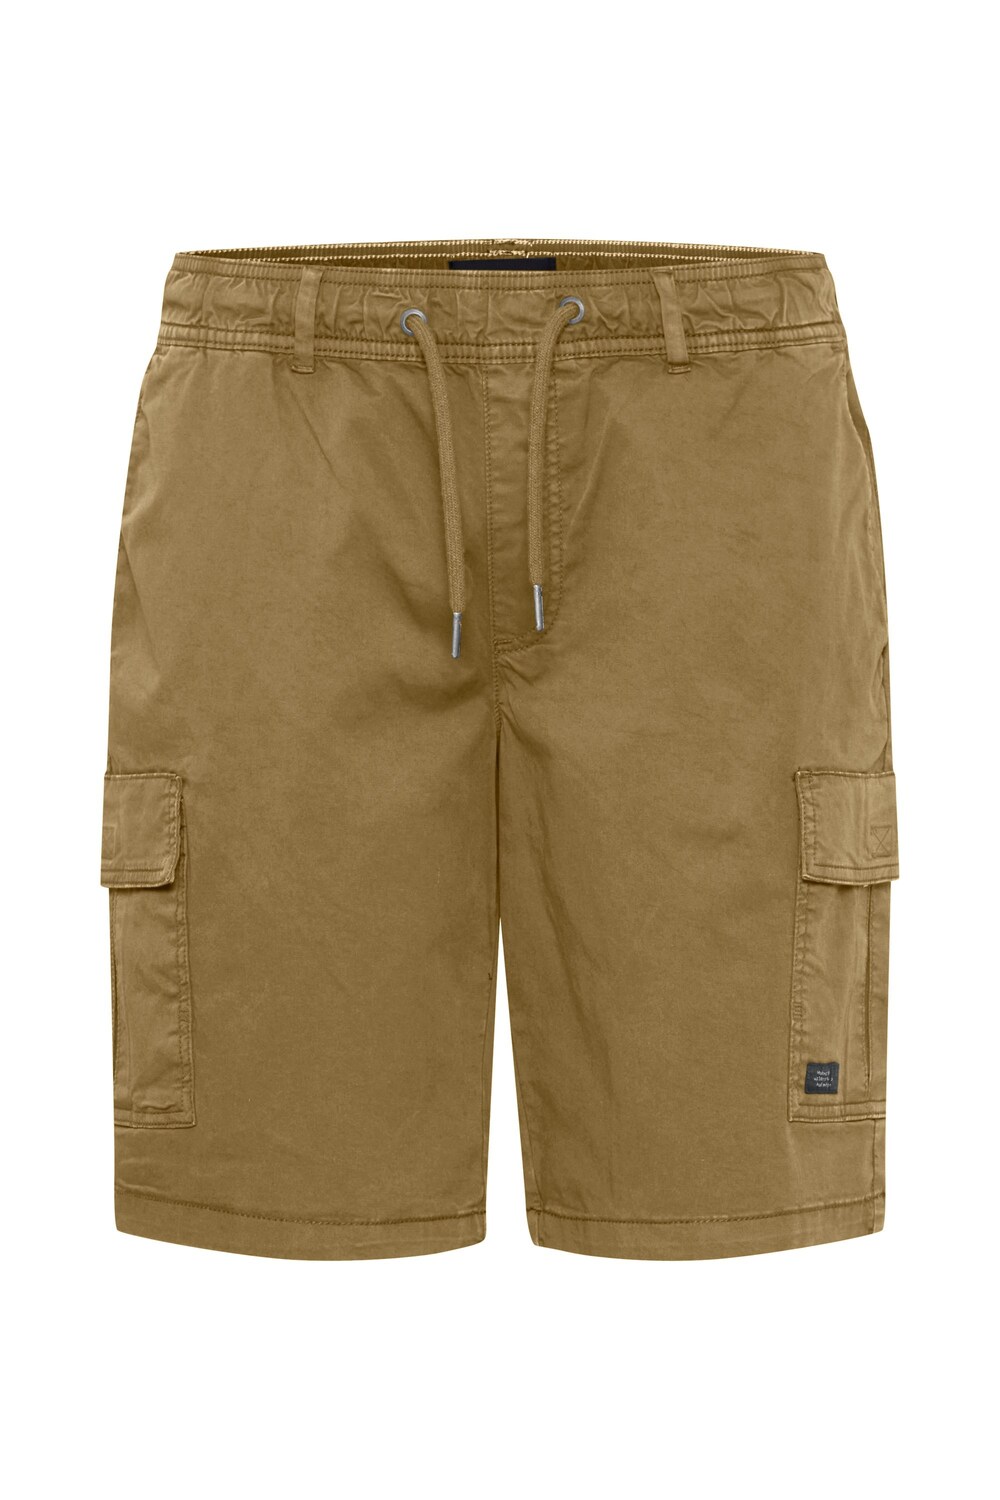 Обычные брюки-карго BLEND, светло-коричневый обычные брюки карго camp david серо коричневый